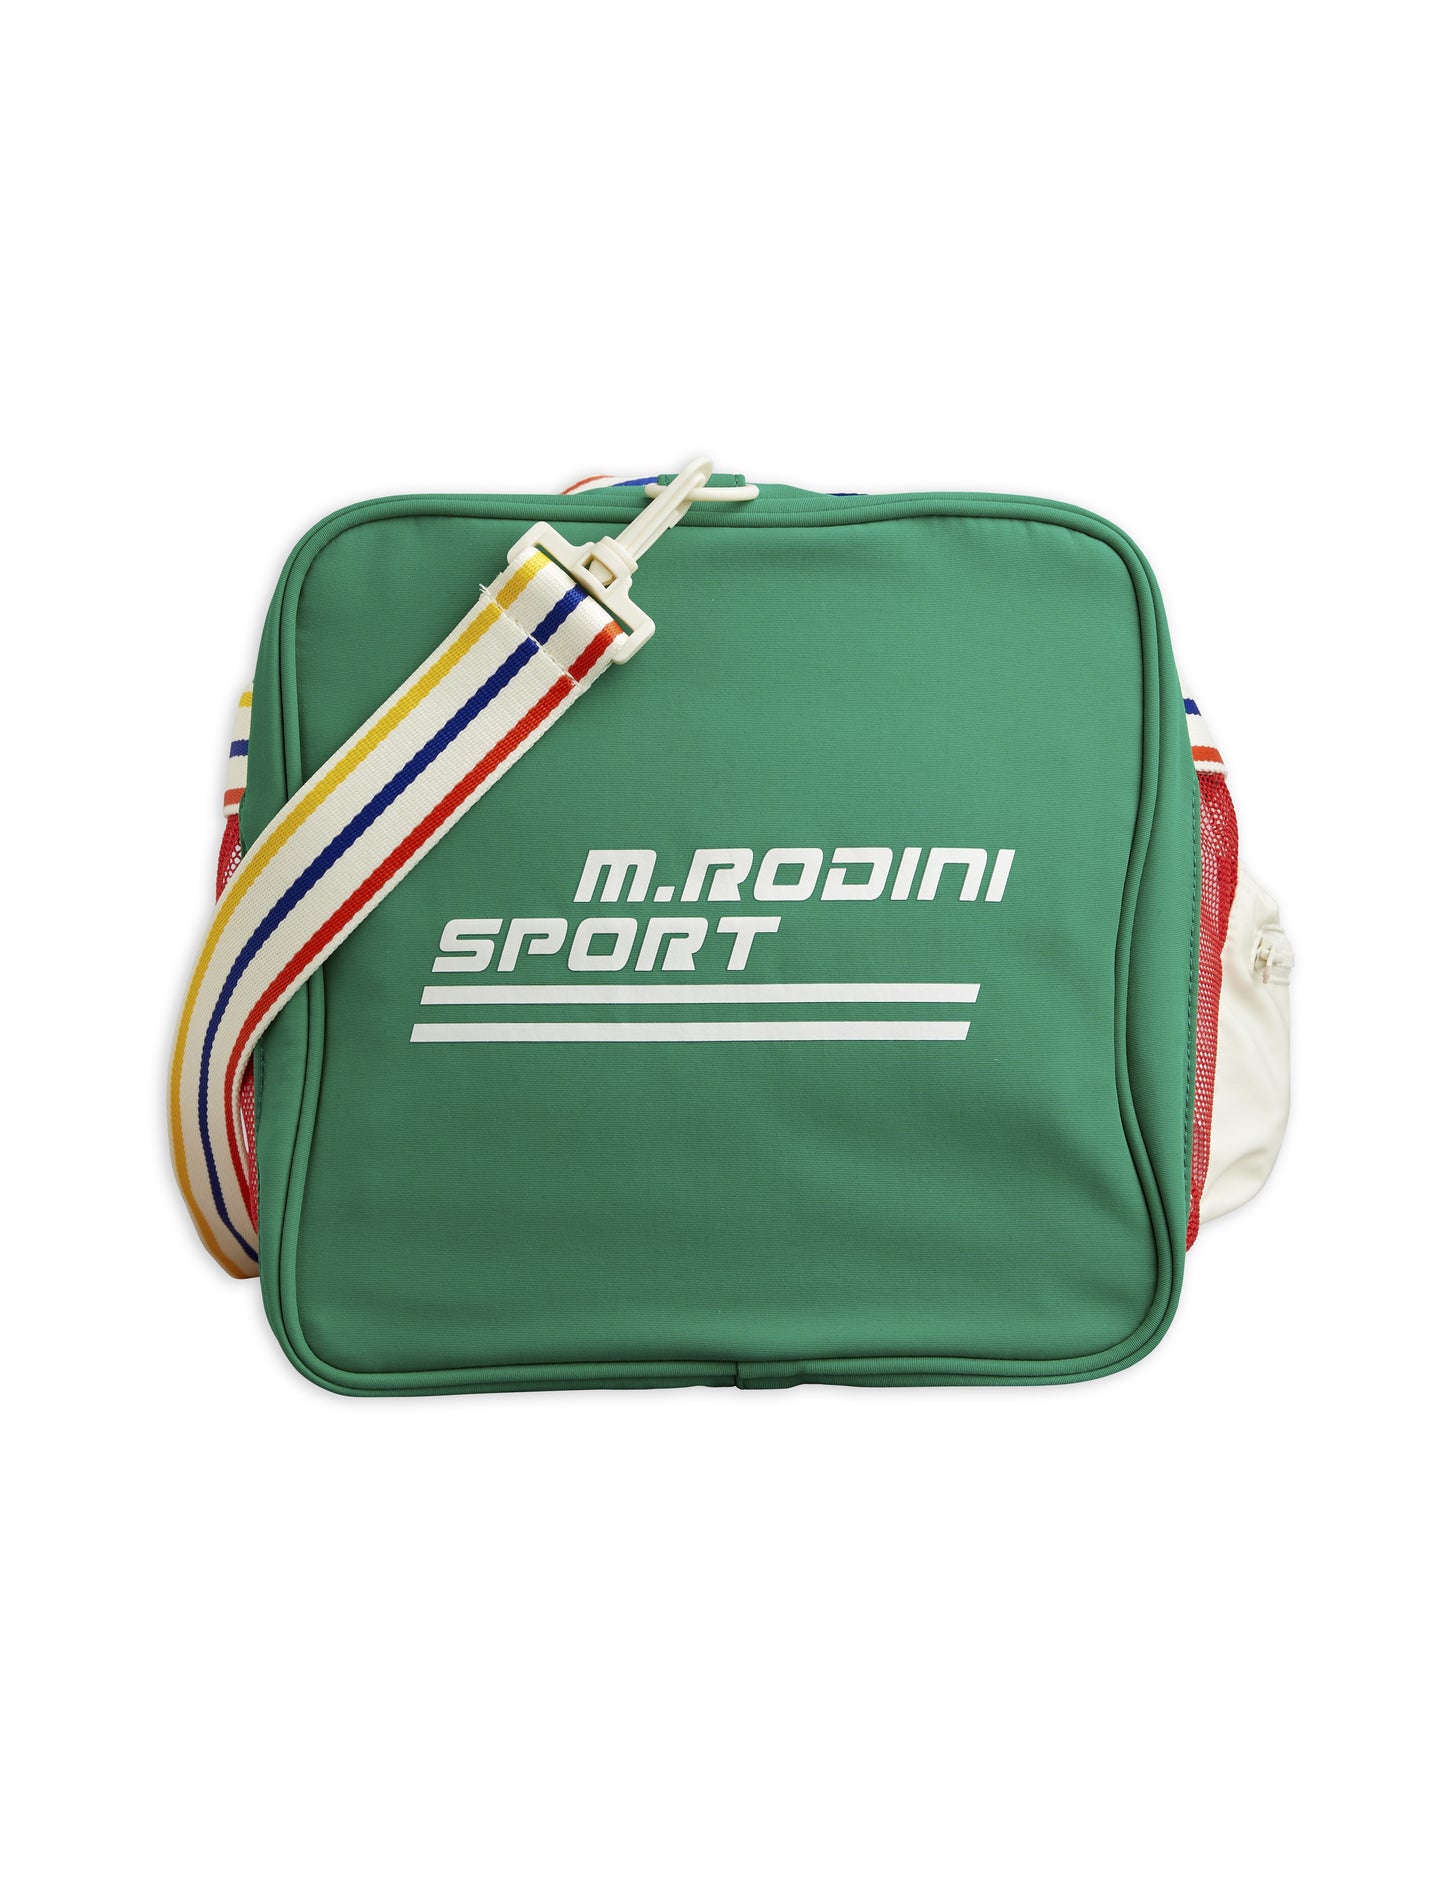 Mini Rodini SP Sport Bag